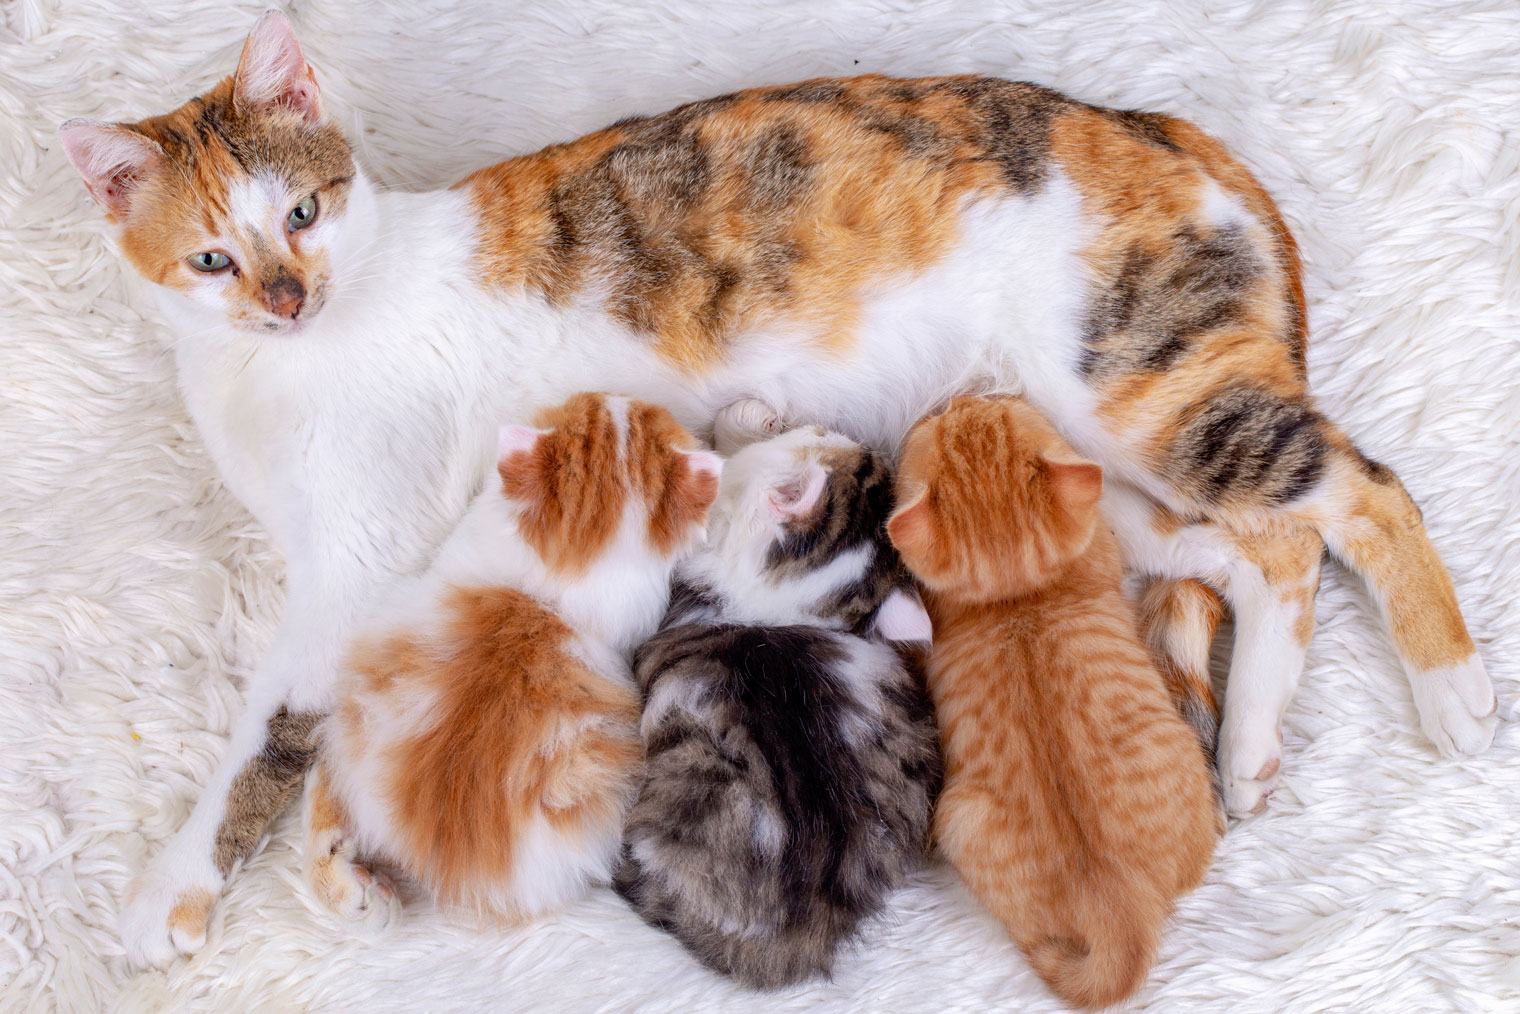 Окрас кошки — генетическая лотерея. Зная ее особенности, можно вывести котят с определенным оттенком шерсти и даже рисунком. Источник: Esin Deniz / Shutterstock / FOTODOM